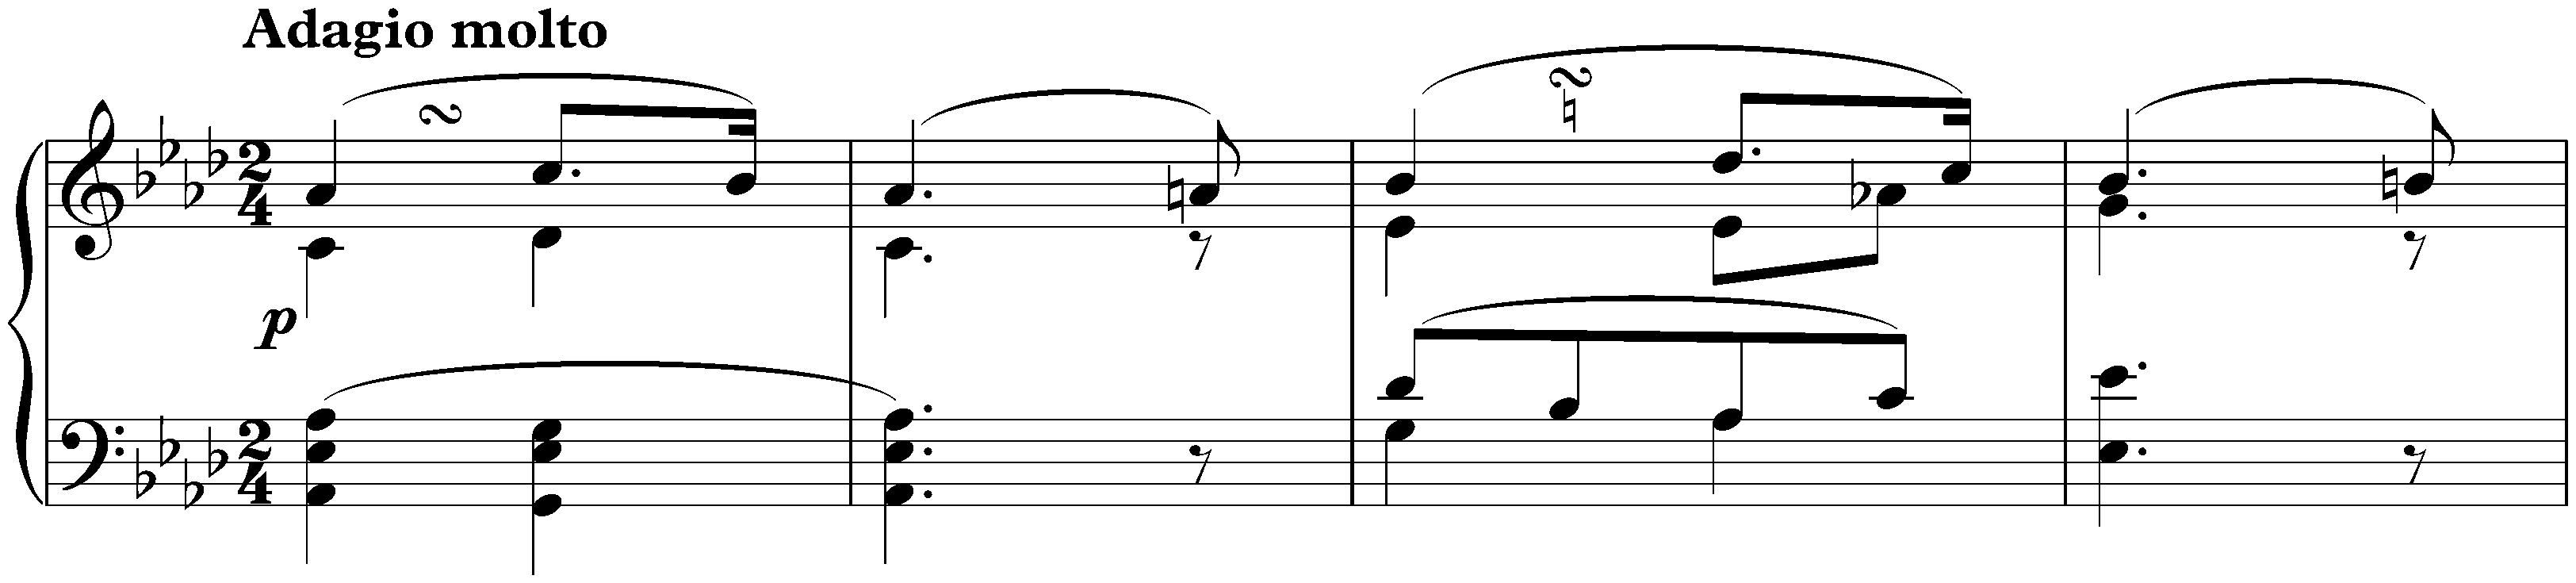 Sonata no. 5 in C minor, op. 10 no. 1; 2. Adagio molto